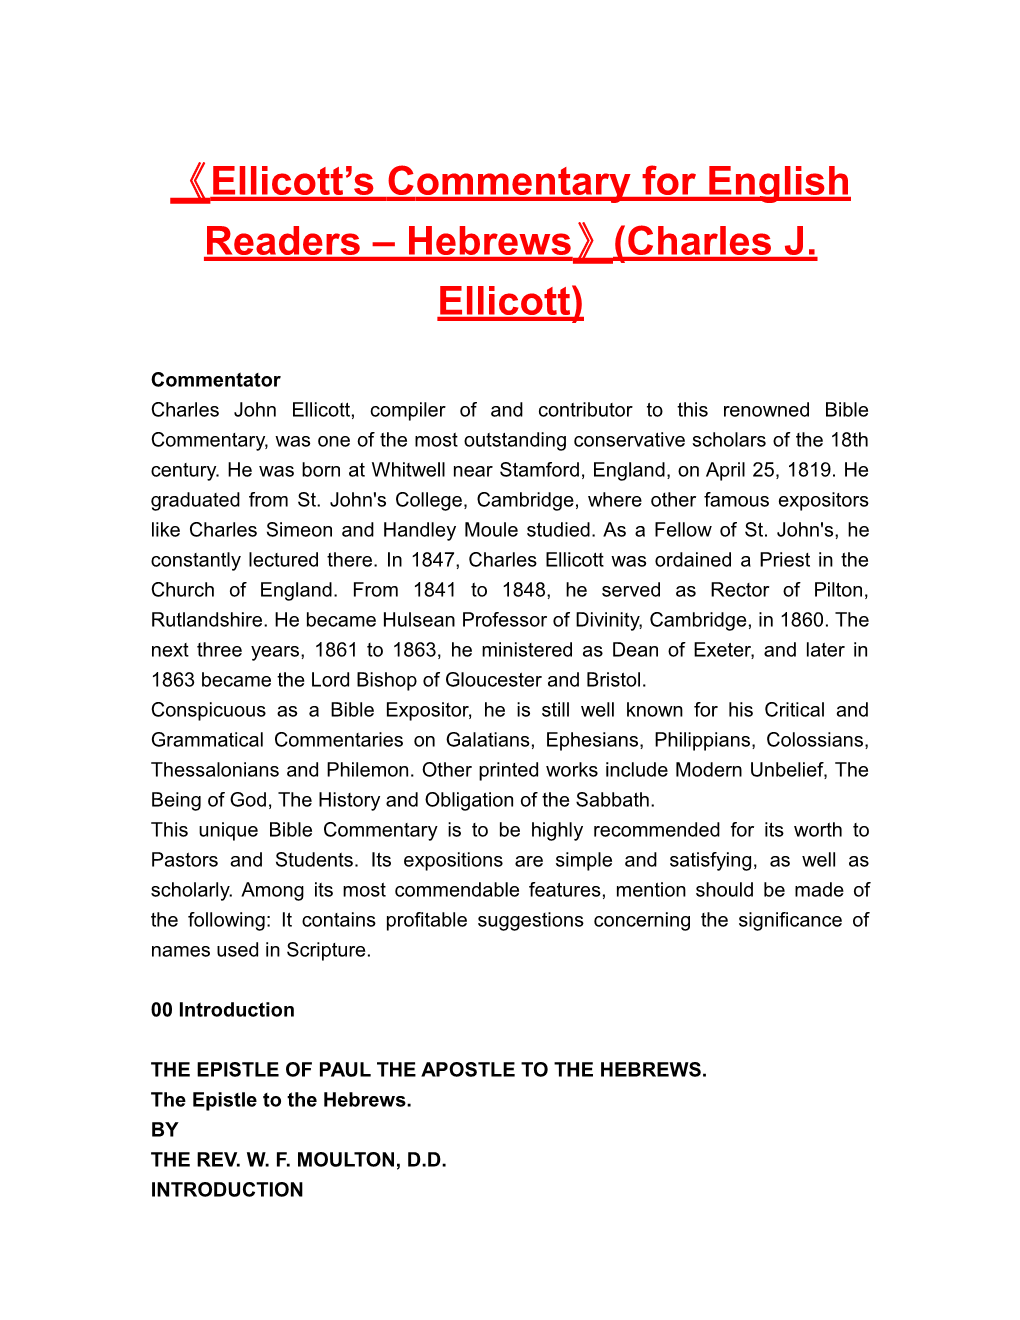 Ellicott Scommentary for English Readers Hebrews (Charles J. Ellicott)